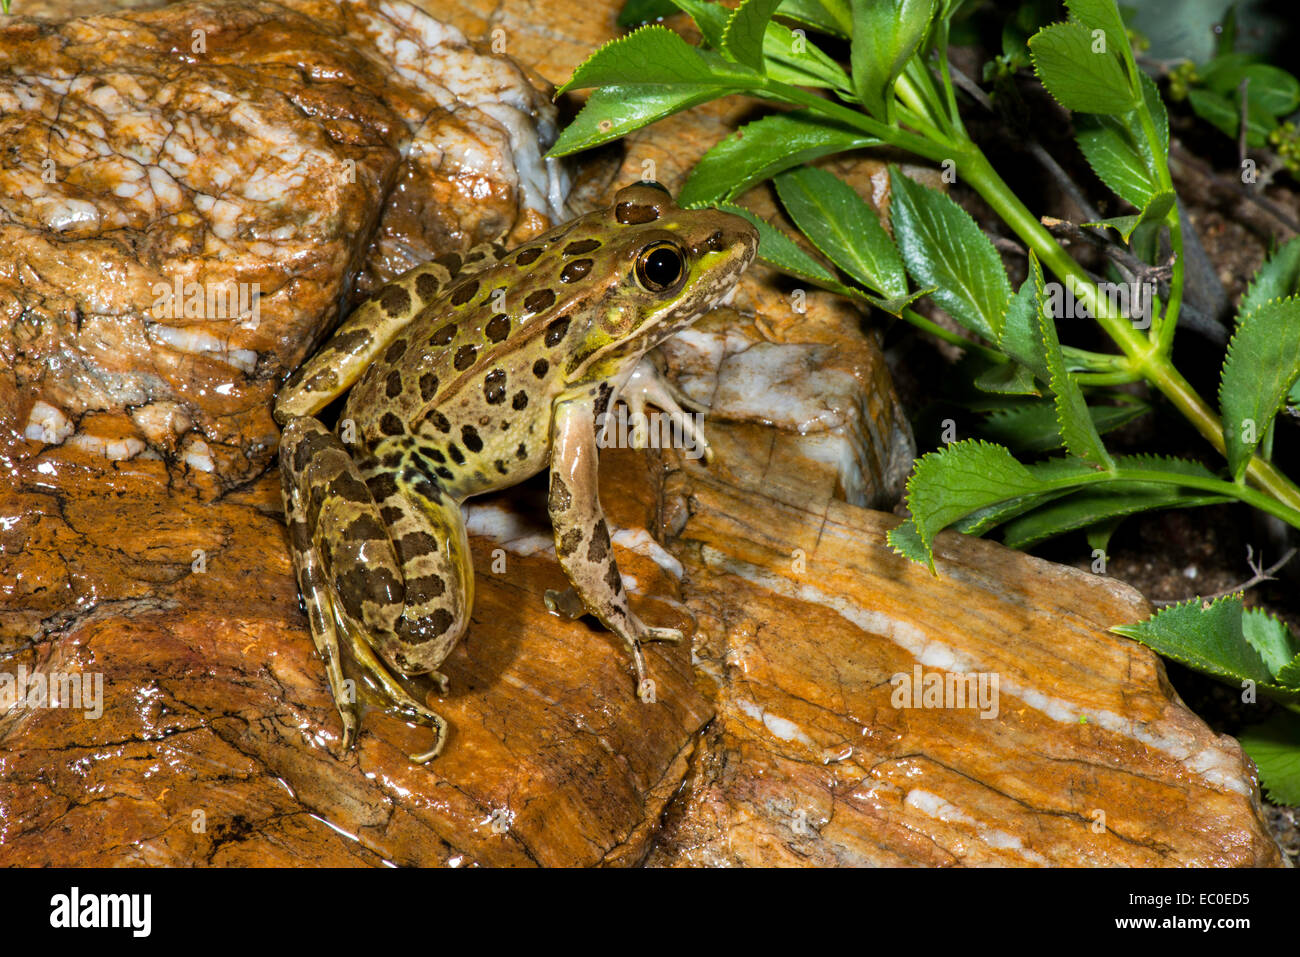 La grenouille léopard de plaine Lithobates yavapaiensis Catalina, comté de Pima, Arizona, United States 9 juin des profils des Ranidés T Banque D'Images